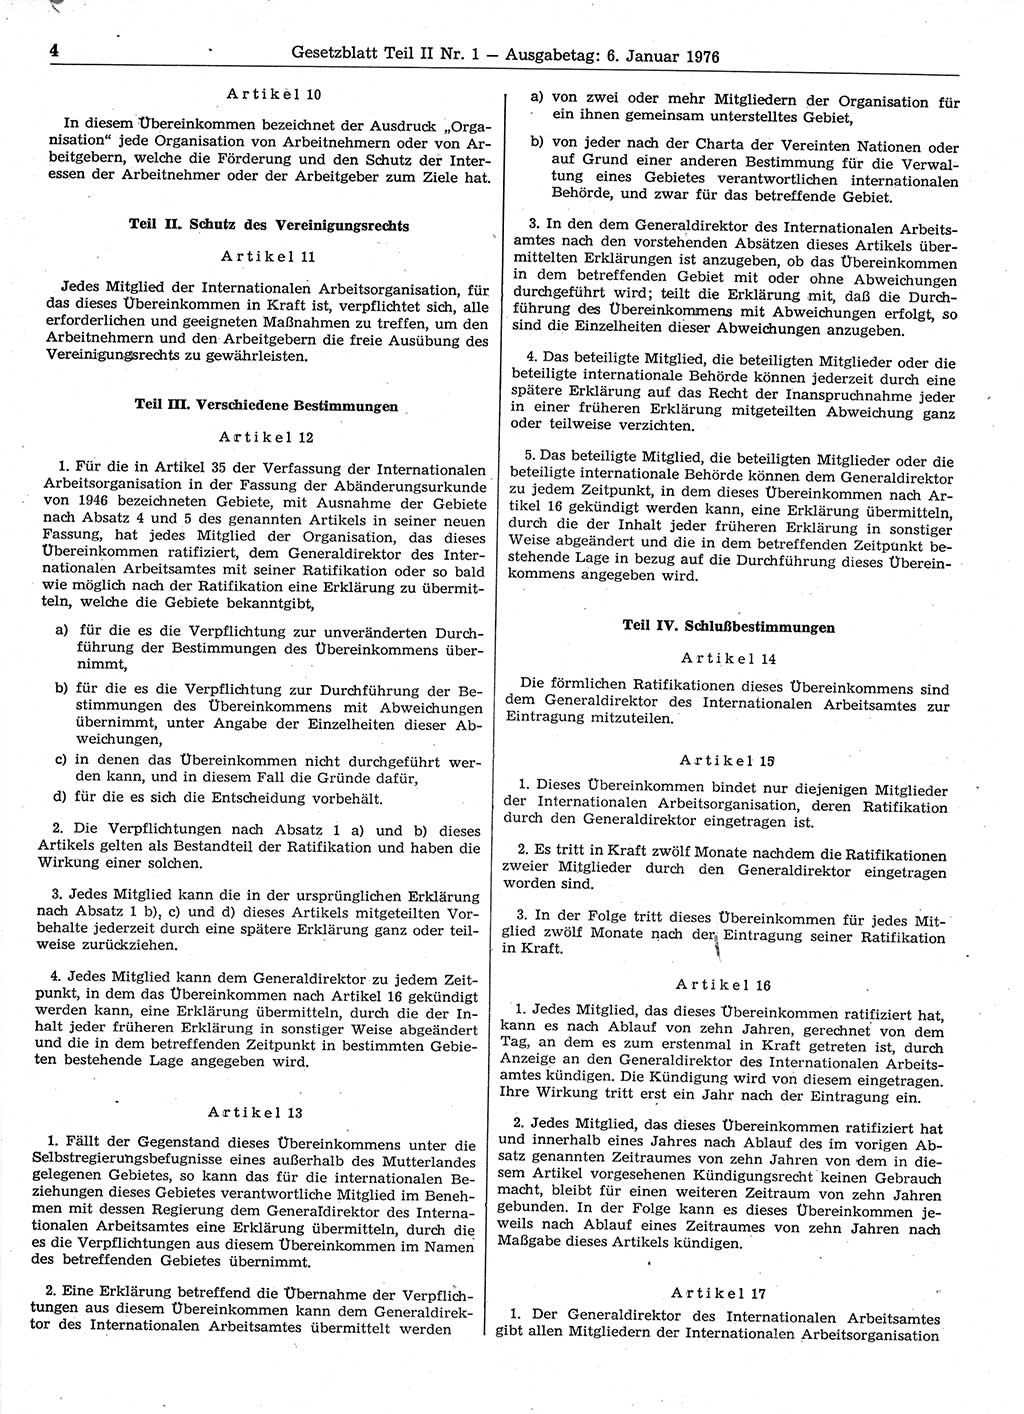 Gesetzblatt (GBl.) der Deutschen Demokratischen Republik (DDR) Teil ⅠⅠ 1976, Seite 4 (GBl. DDR ⅠⅠ 1976, S. 4)